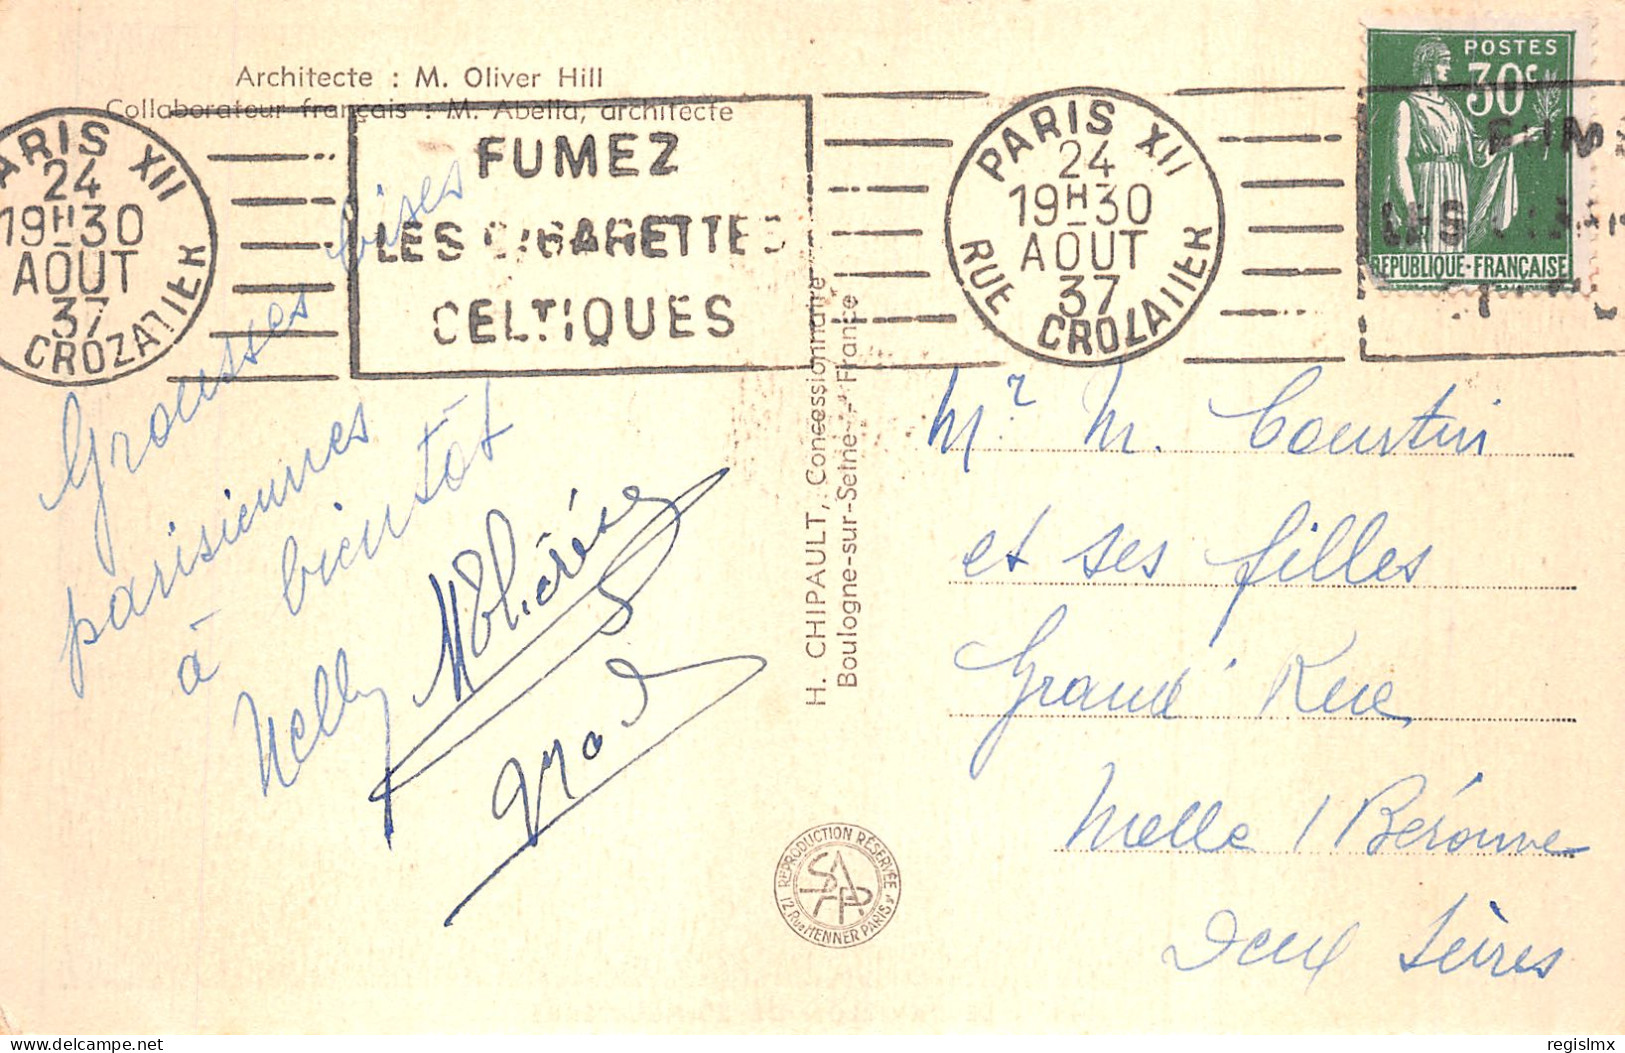 75-PARIS EXPOSITION INTERNATIONALE 1937 PAVILLON DE L ANGLETERRE-N°T1044-A/0371 - Expositions